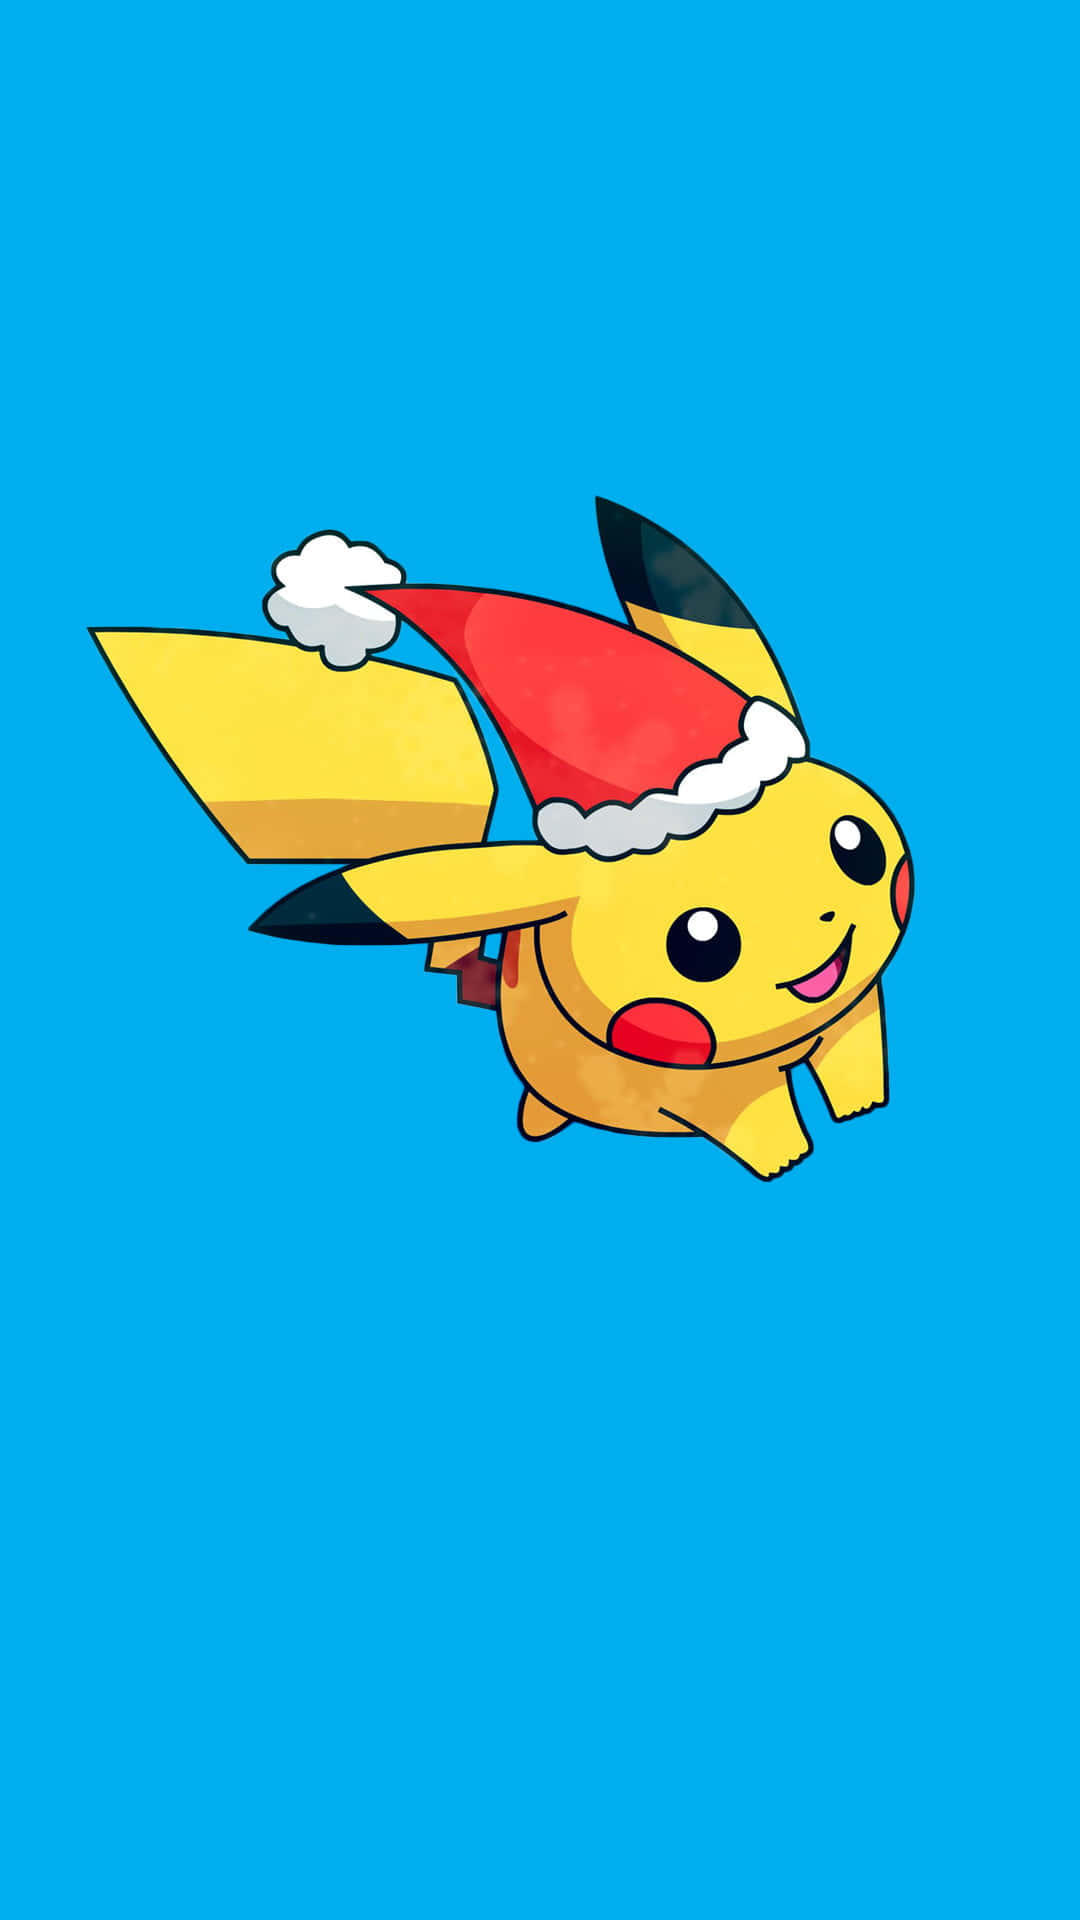 Pokémonjul-pikachu Med Tomtemössa. Wallpaper